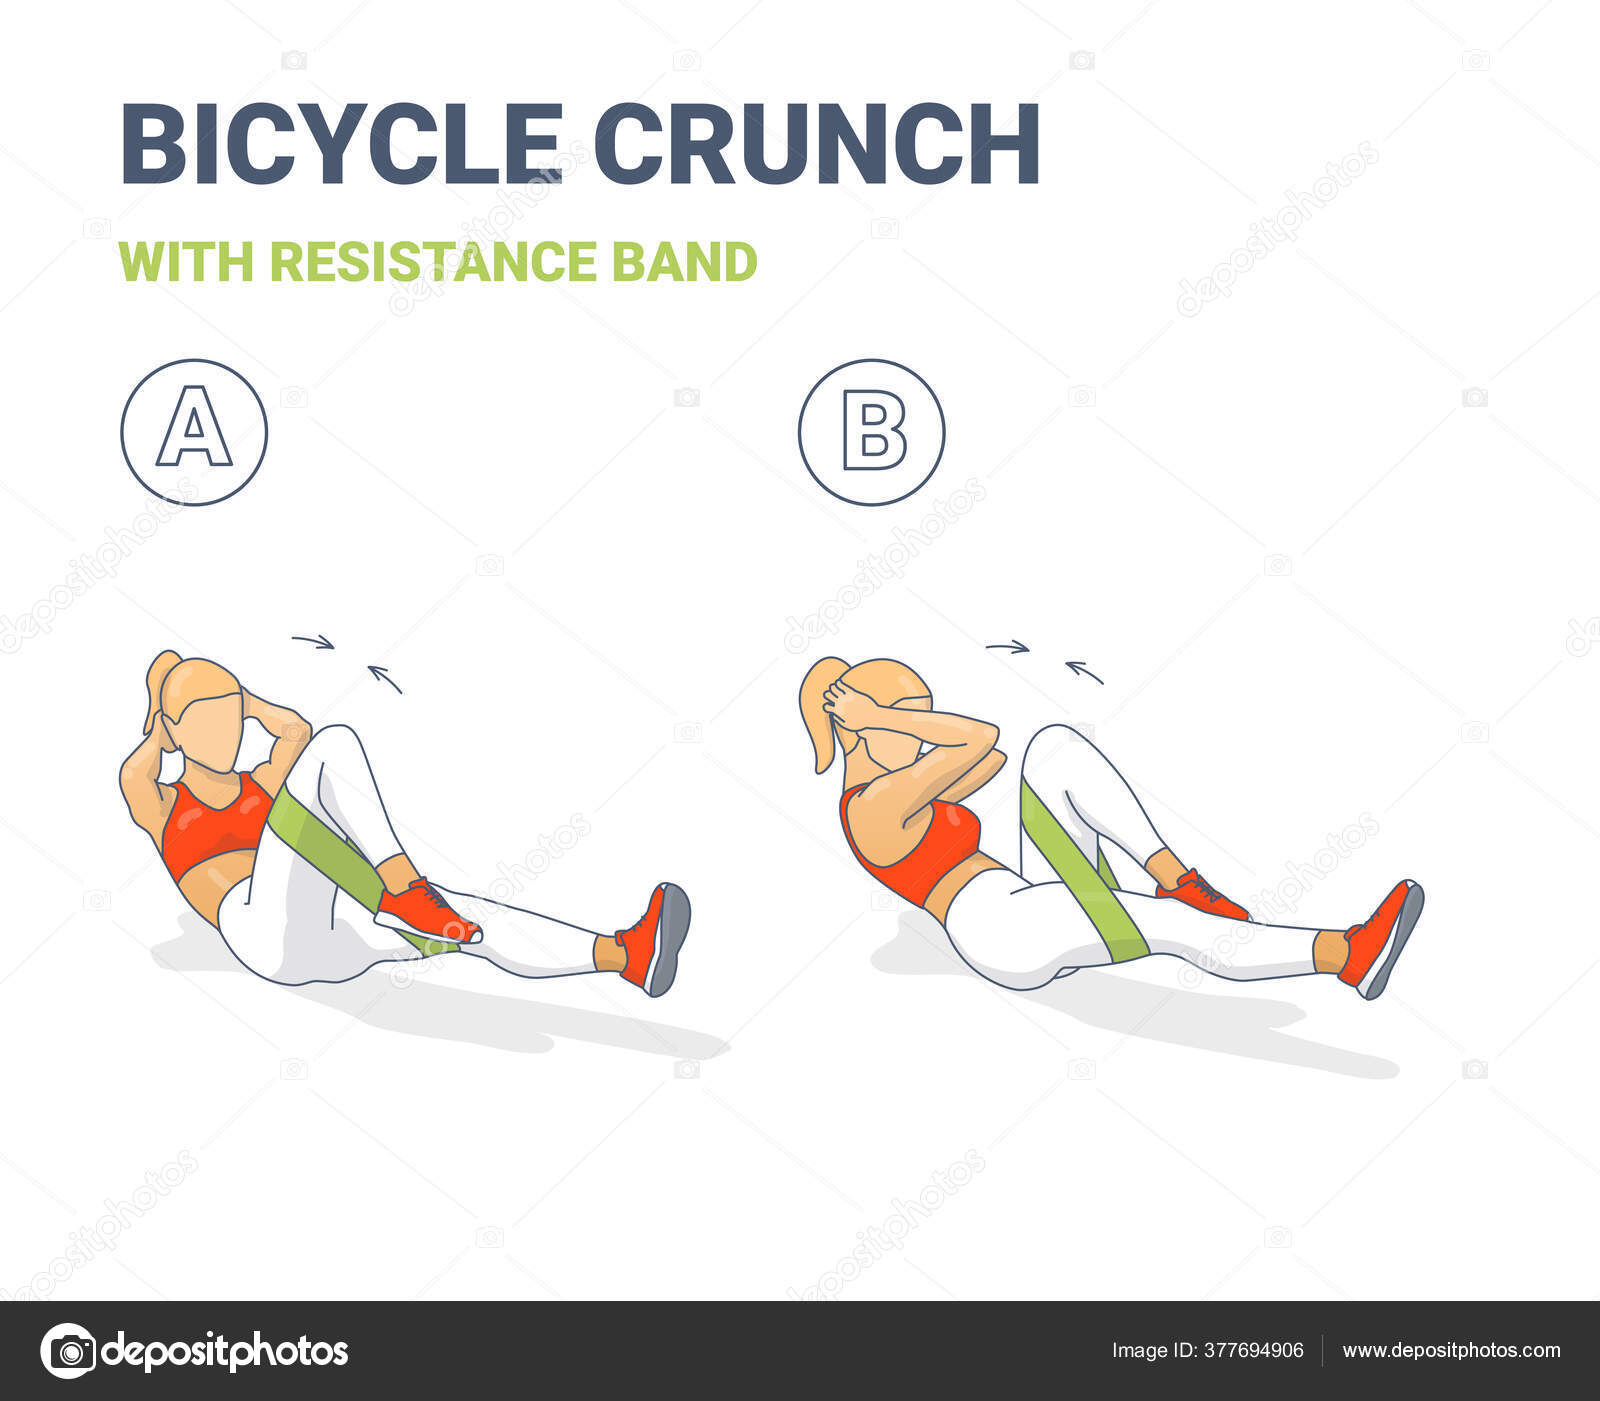 Exercício funcional (ou de resistência): Crunch bicicleta – NiT